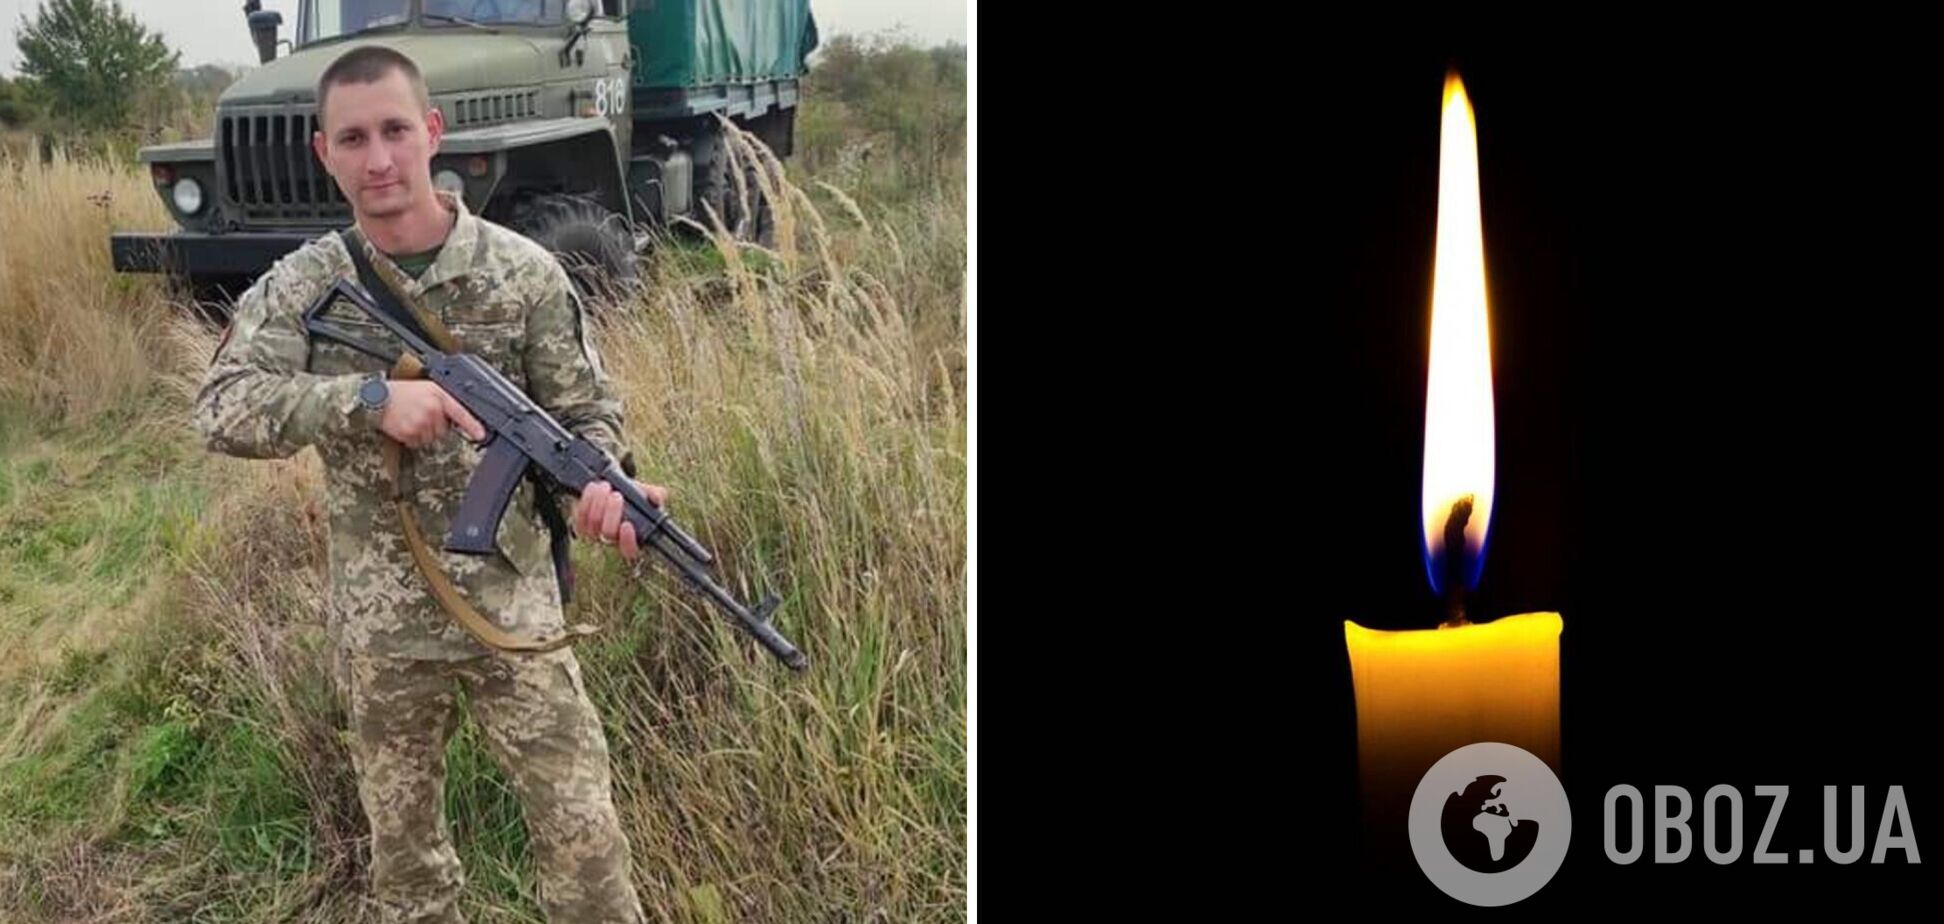 'Было так много планов в жизни': в боях за Украину погиб 30-летний воин со Львовщины. Фото